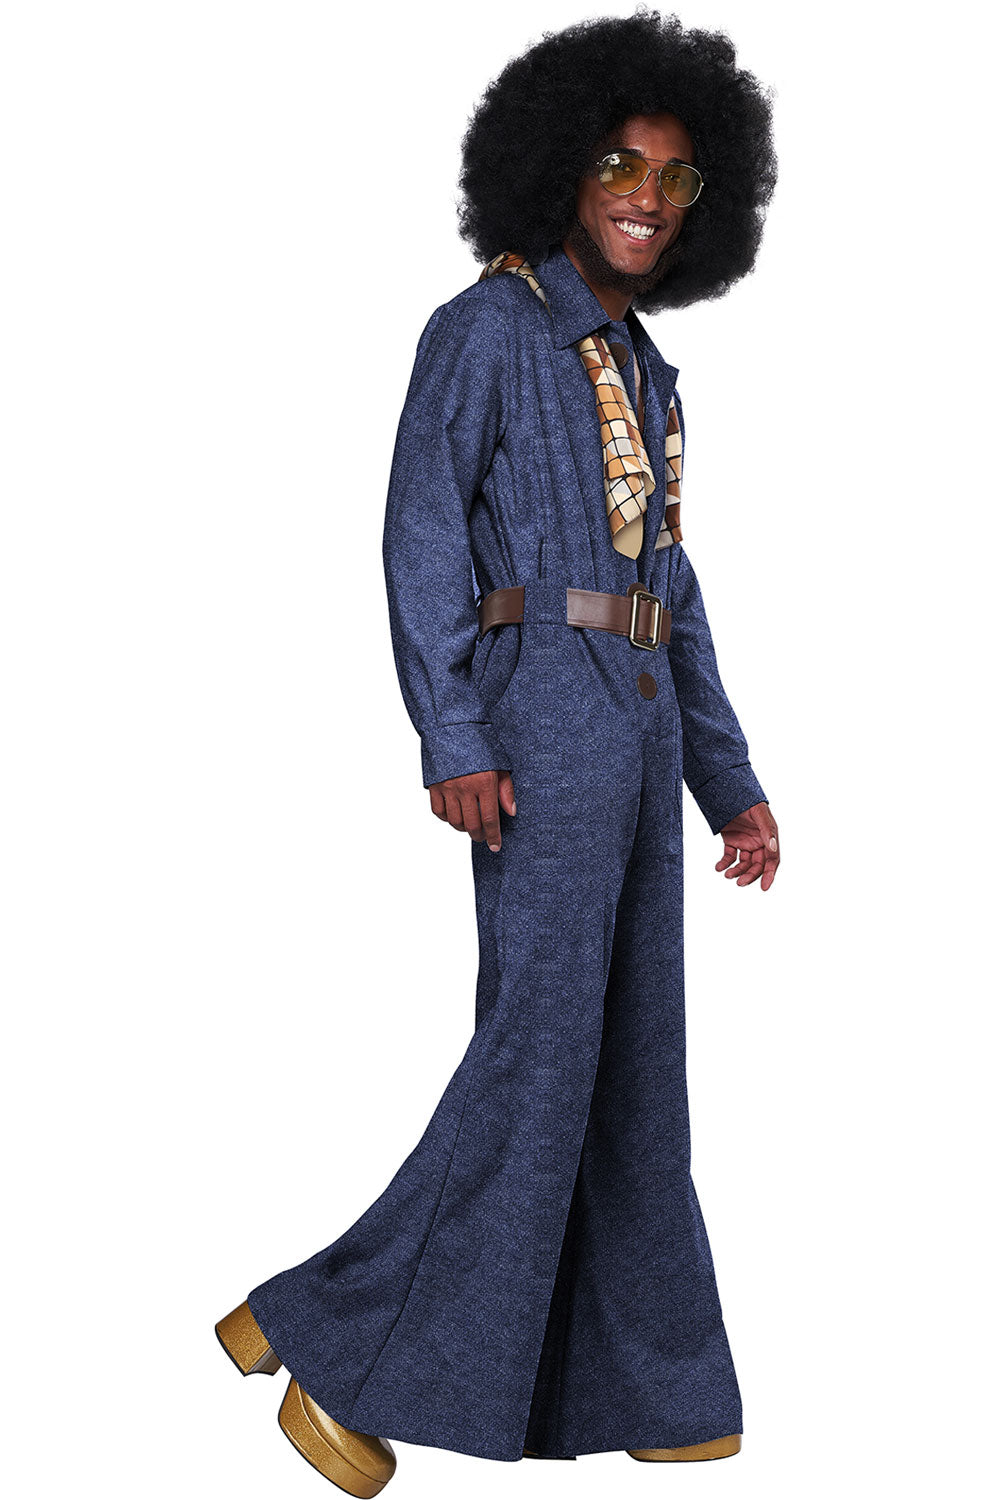 70's Denim Jumpsuit / Adult California Costume 5120/080